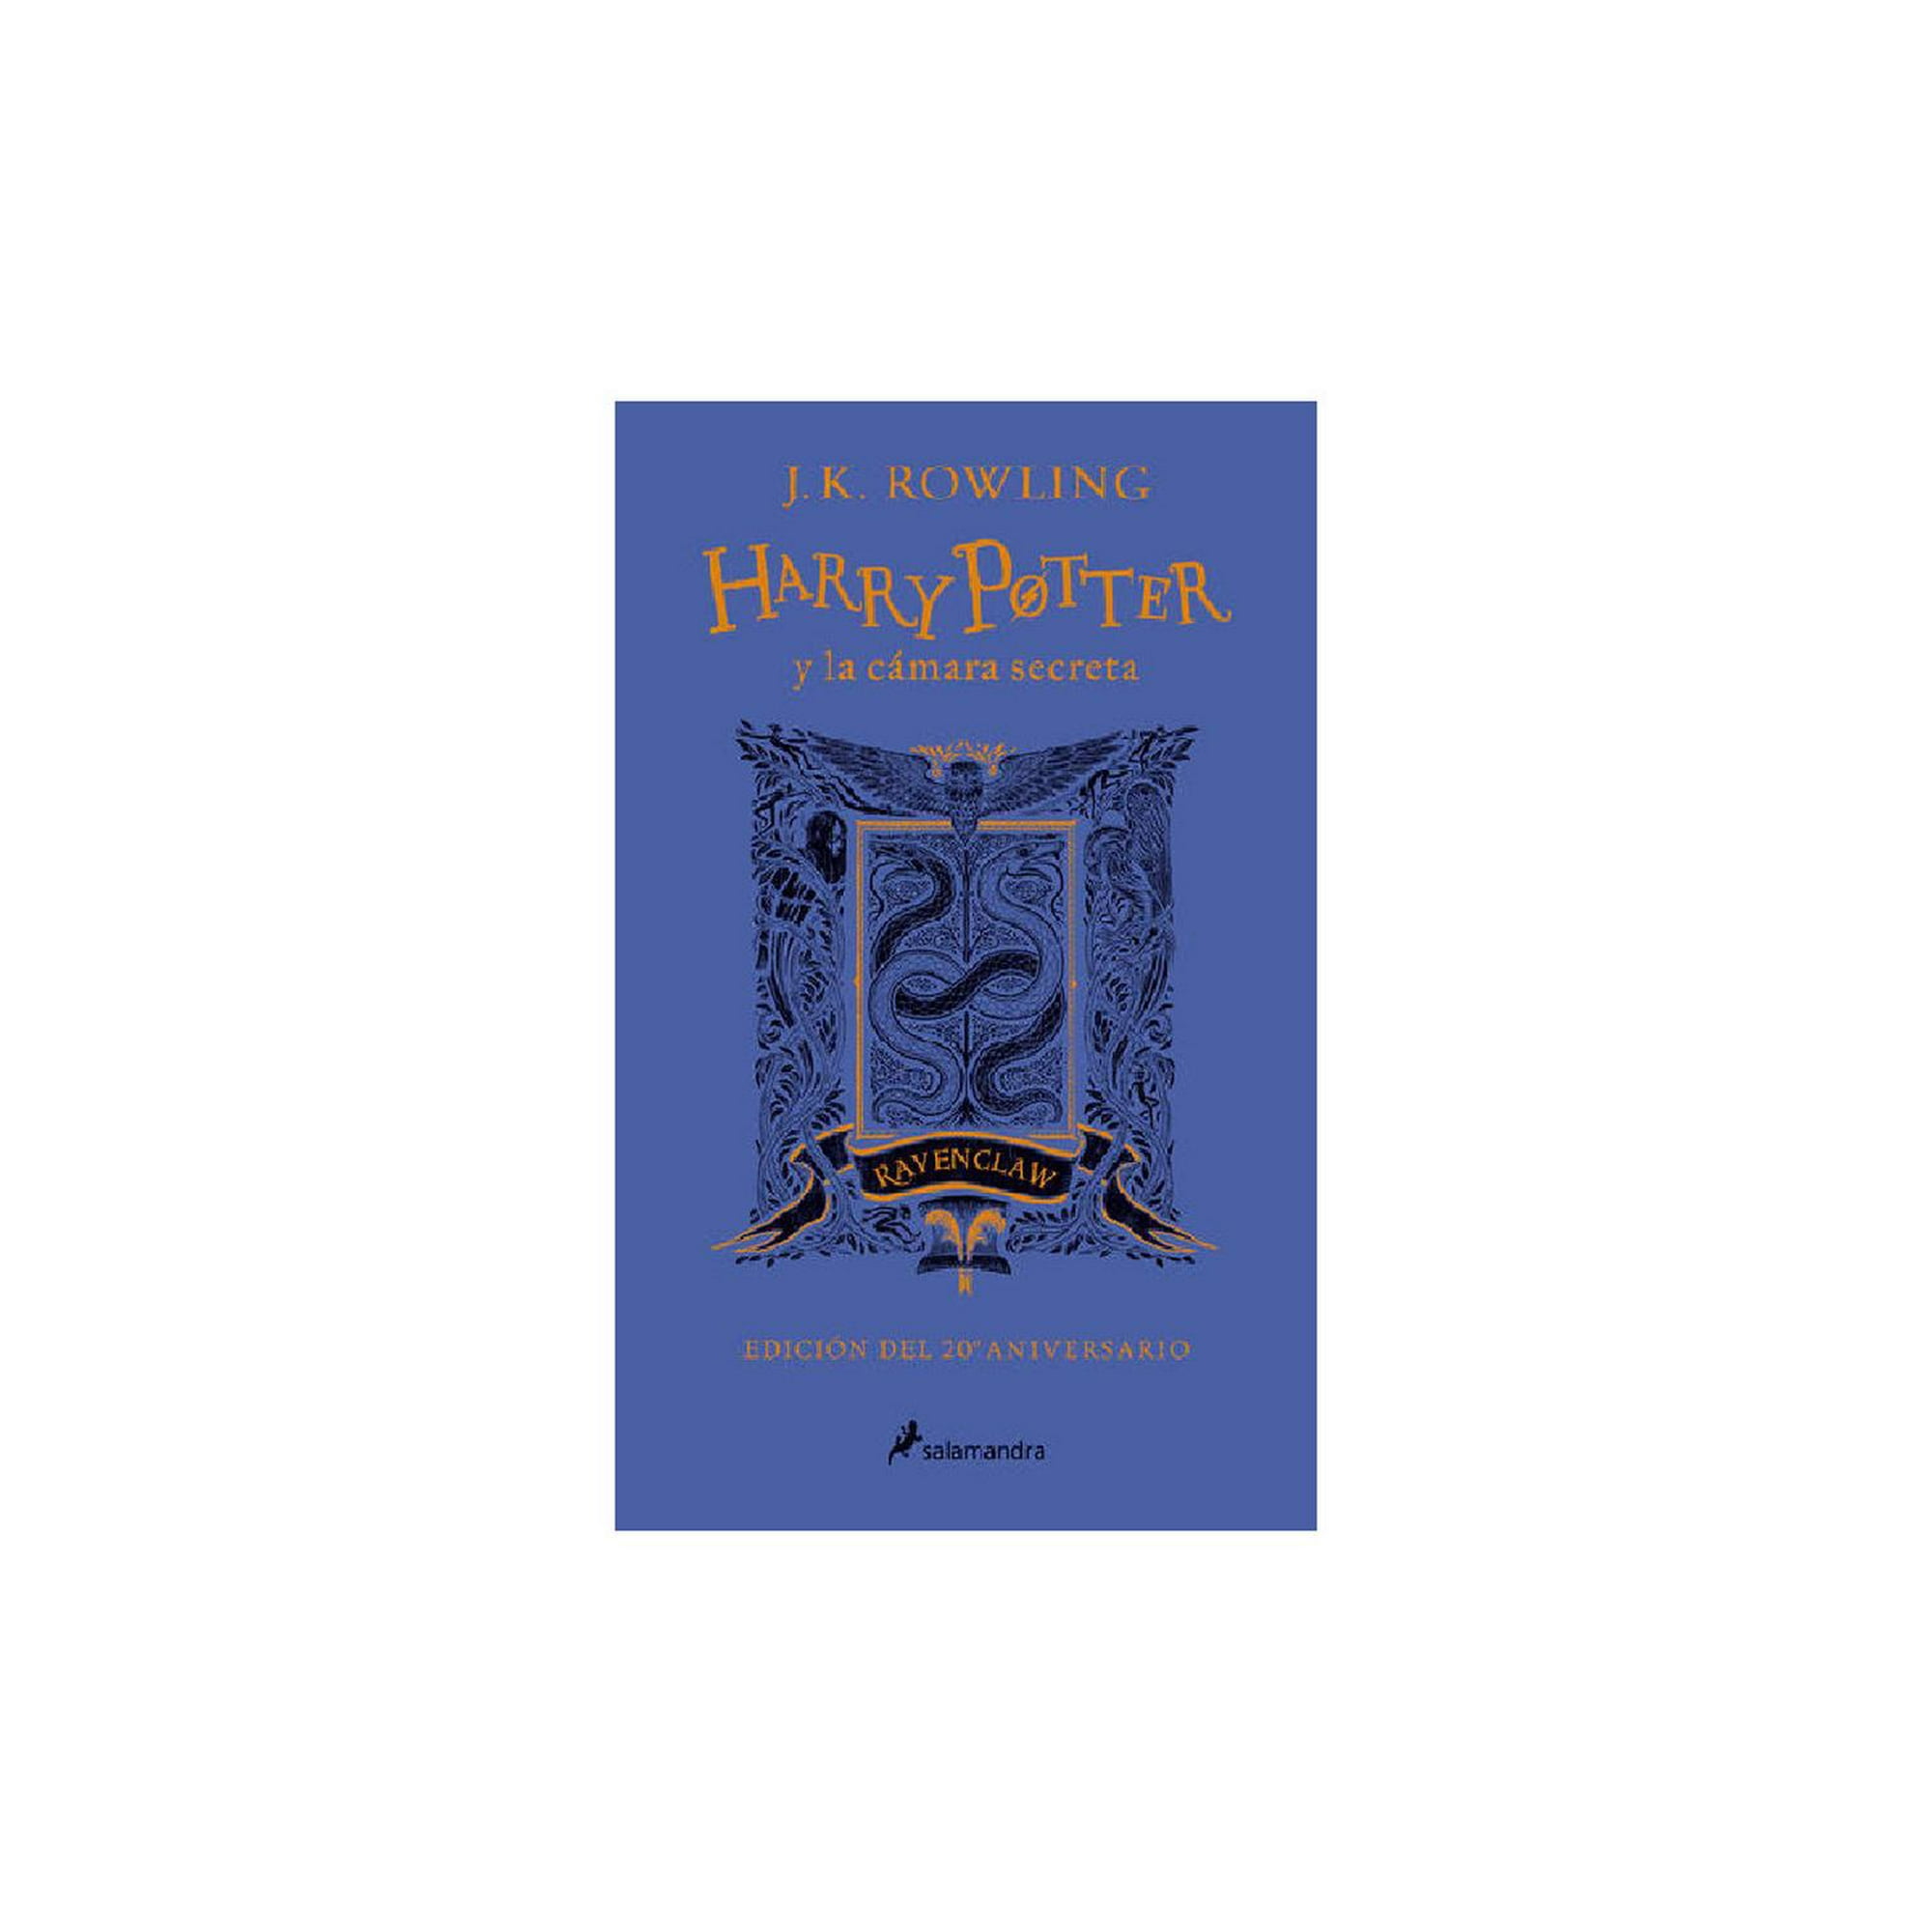 Libro Harry Potter y el prisionero de Azkaban (edición Hufflepuff del 20°  aniversario) (Harry Potter 3) De J. K. Rowling - Buscalibre